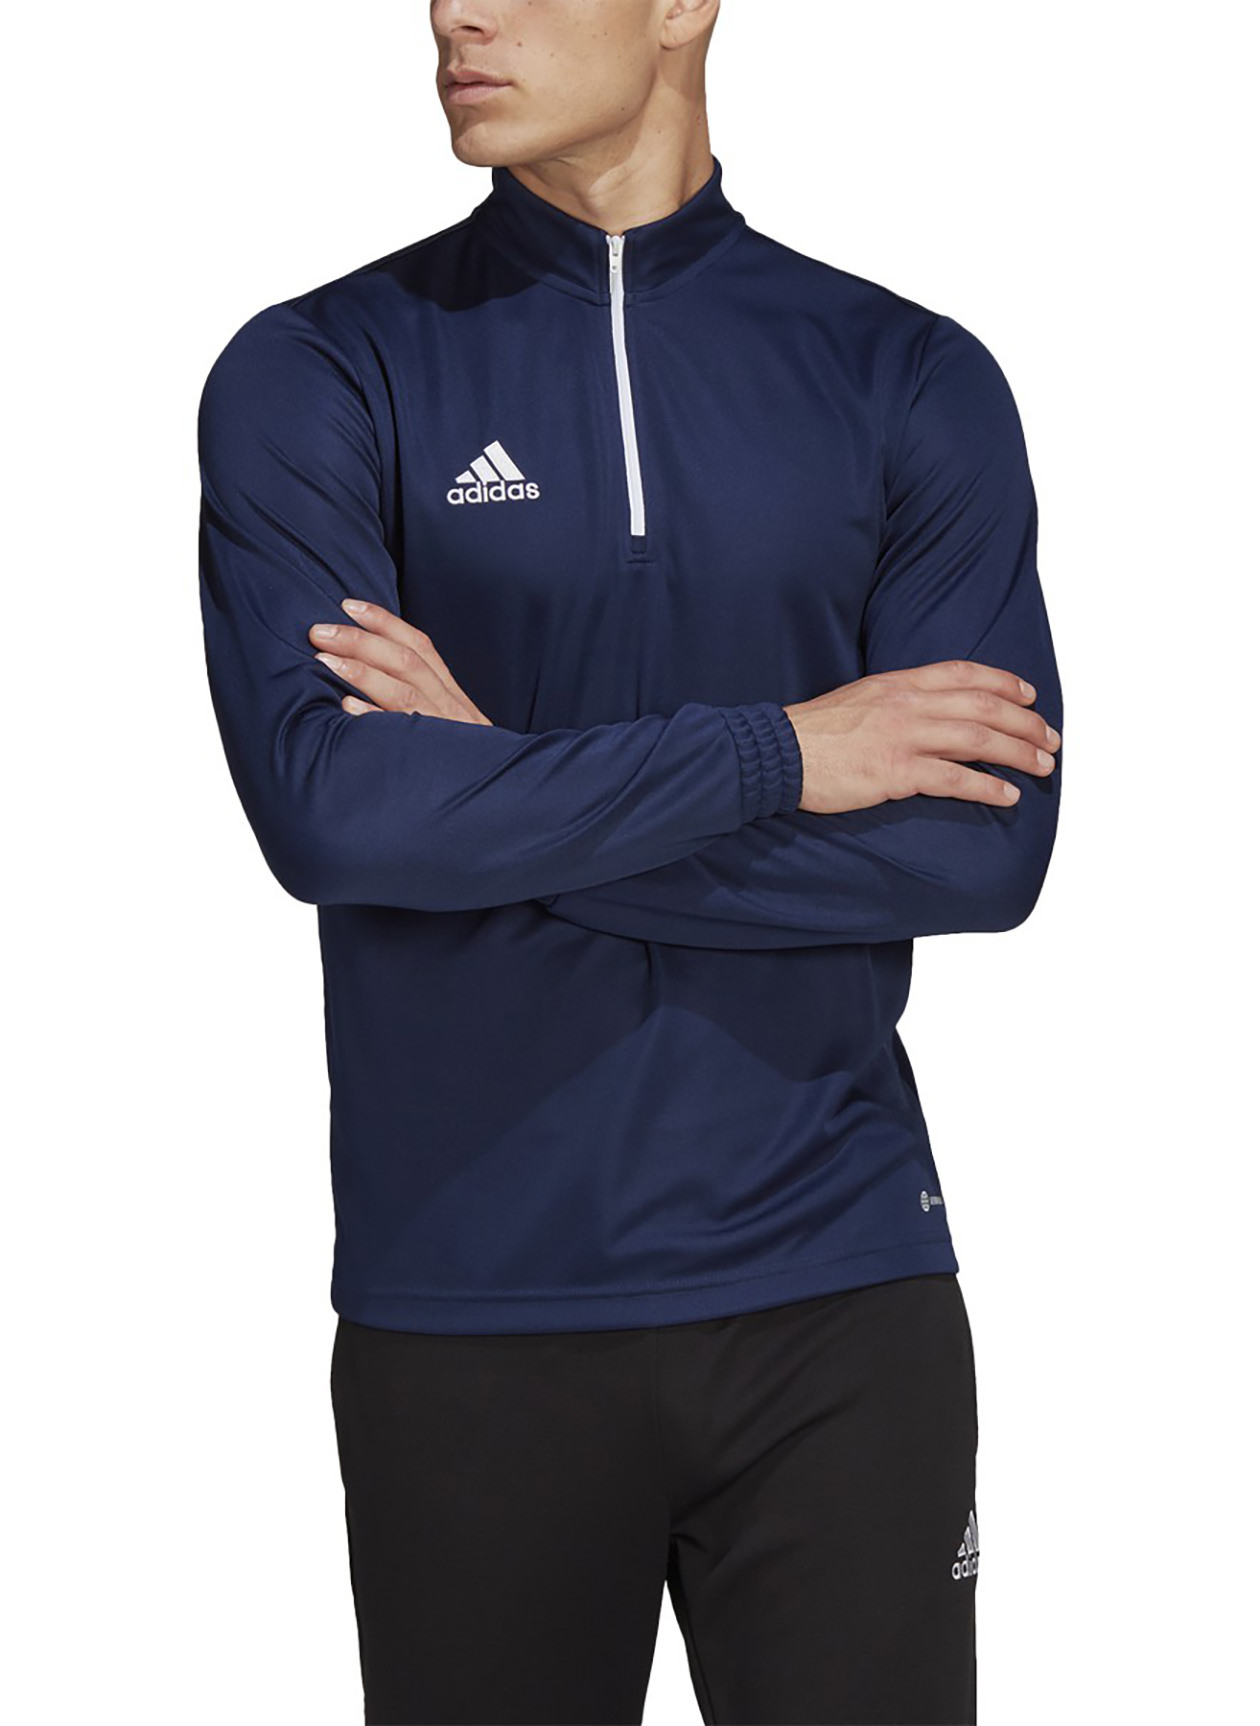 Adidas Men\'s Team Navy Blue 2 Entrada22 Training Top | Custom Pullover